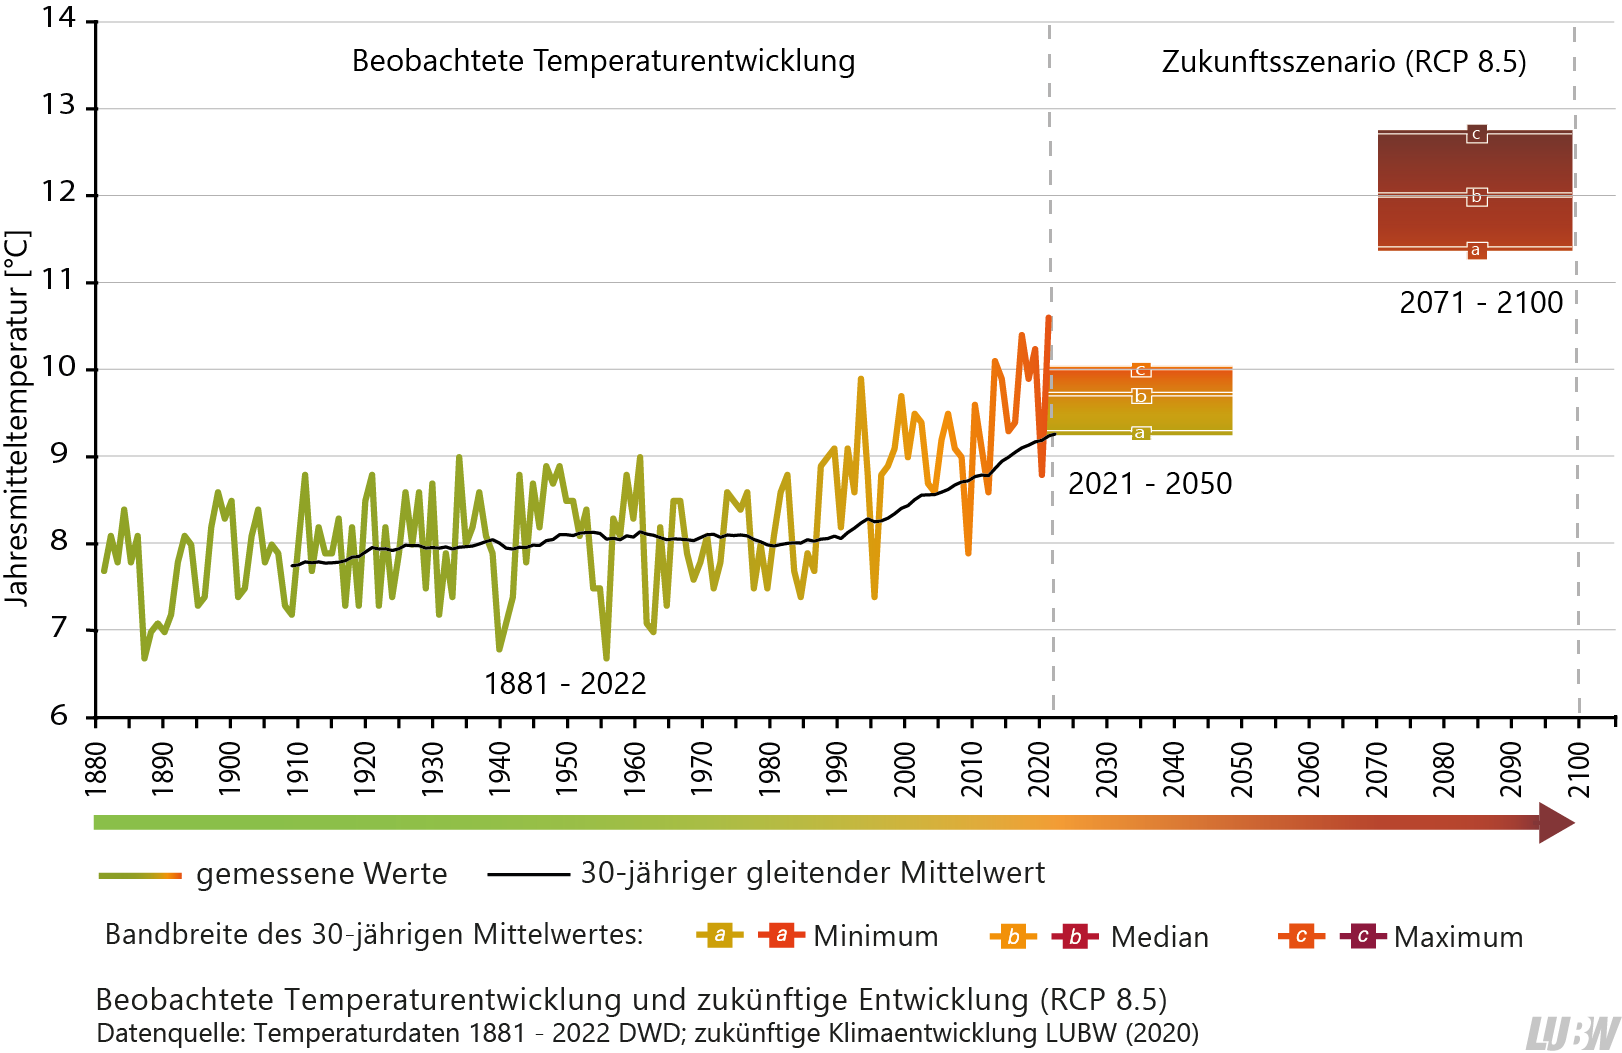 Gezeigt wird eine Grafik mit der beobachteten Temperaturentwicklung bis 2022 und der zukünftigen Entwicklung auf Basis des Szenarios RCP 8.5 für die Zeiträume 2021 bis 2050 (nahe Zukunft) und 2071 bis 2100 (ferne Zukunft). Die Jahresmitteltemperatur ist in Baden-Württemberg in der Vergangenheit, vor allem ab den 1990er-Jahren deutlich, angestiegen. In Zukunft wird sie laut der Klimamodellrechnungen weiter ansteigen.